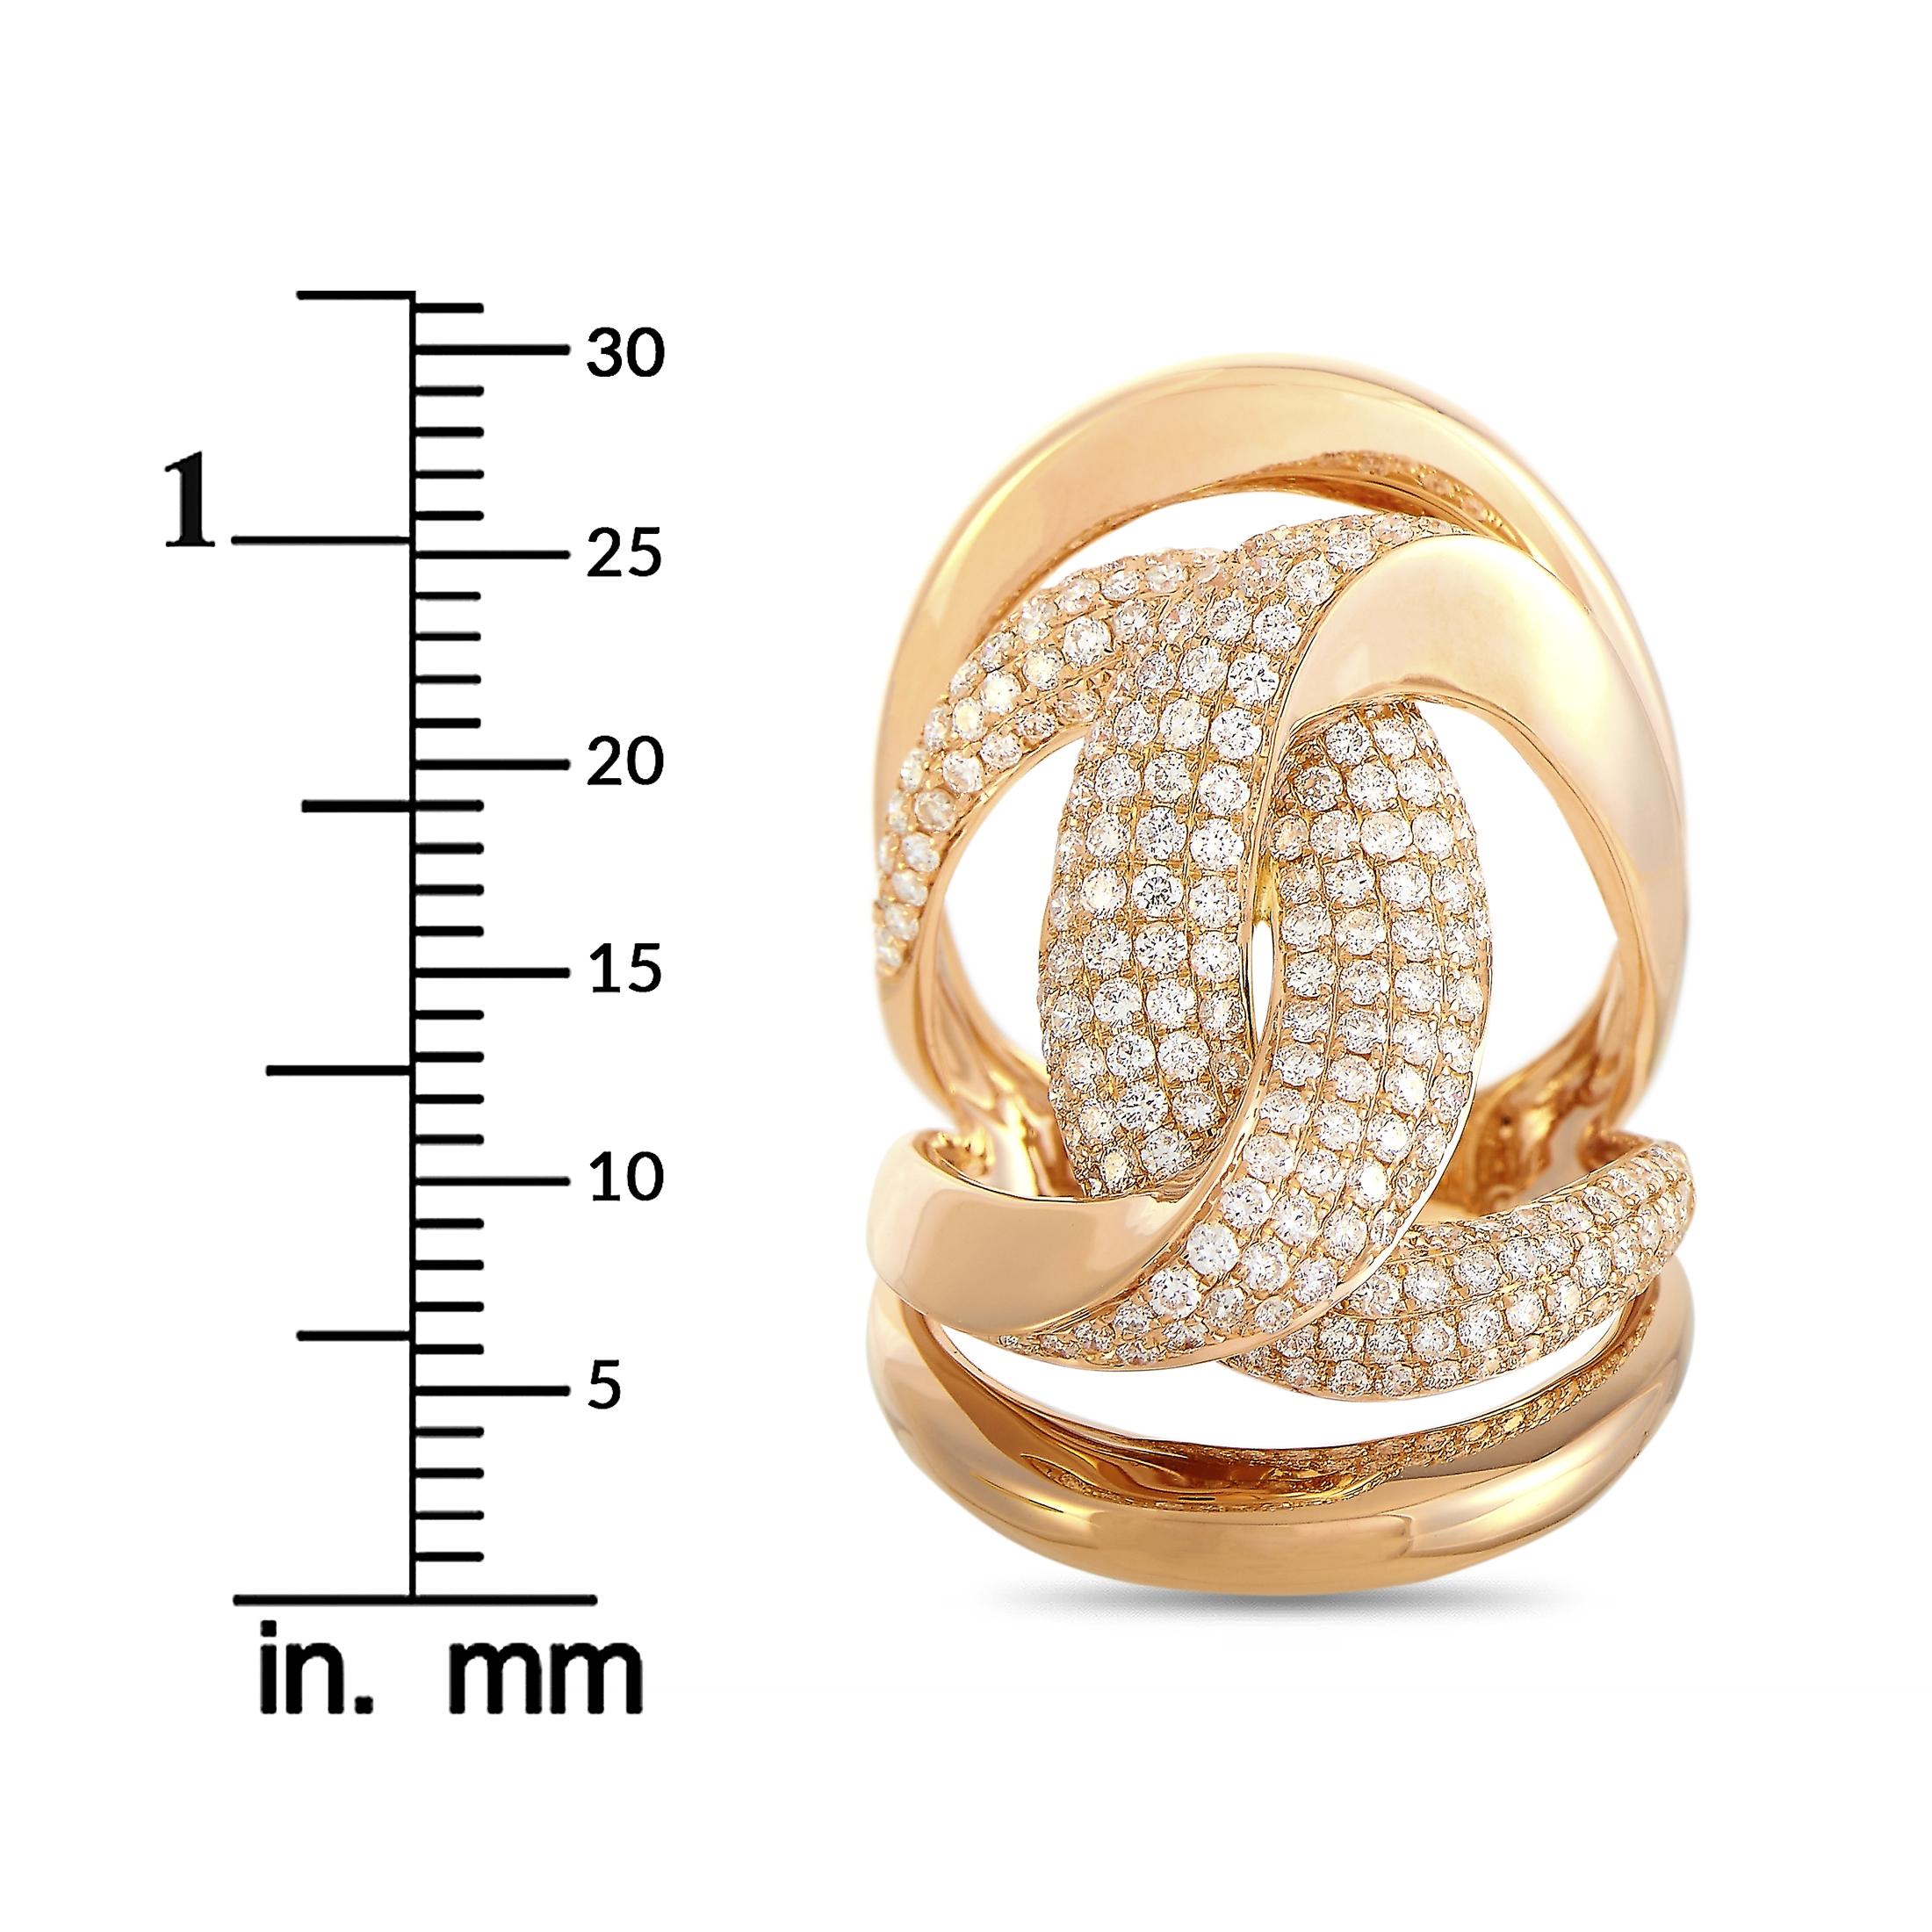 LB Exclusive 18 Karat Rose Gold 1.50 Carat Diamond Ring 1